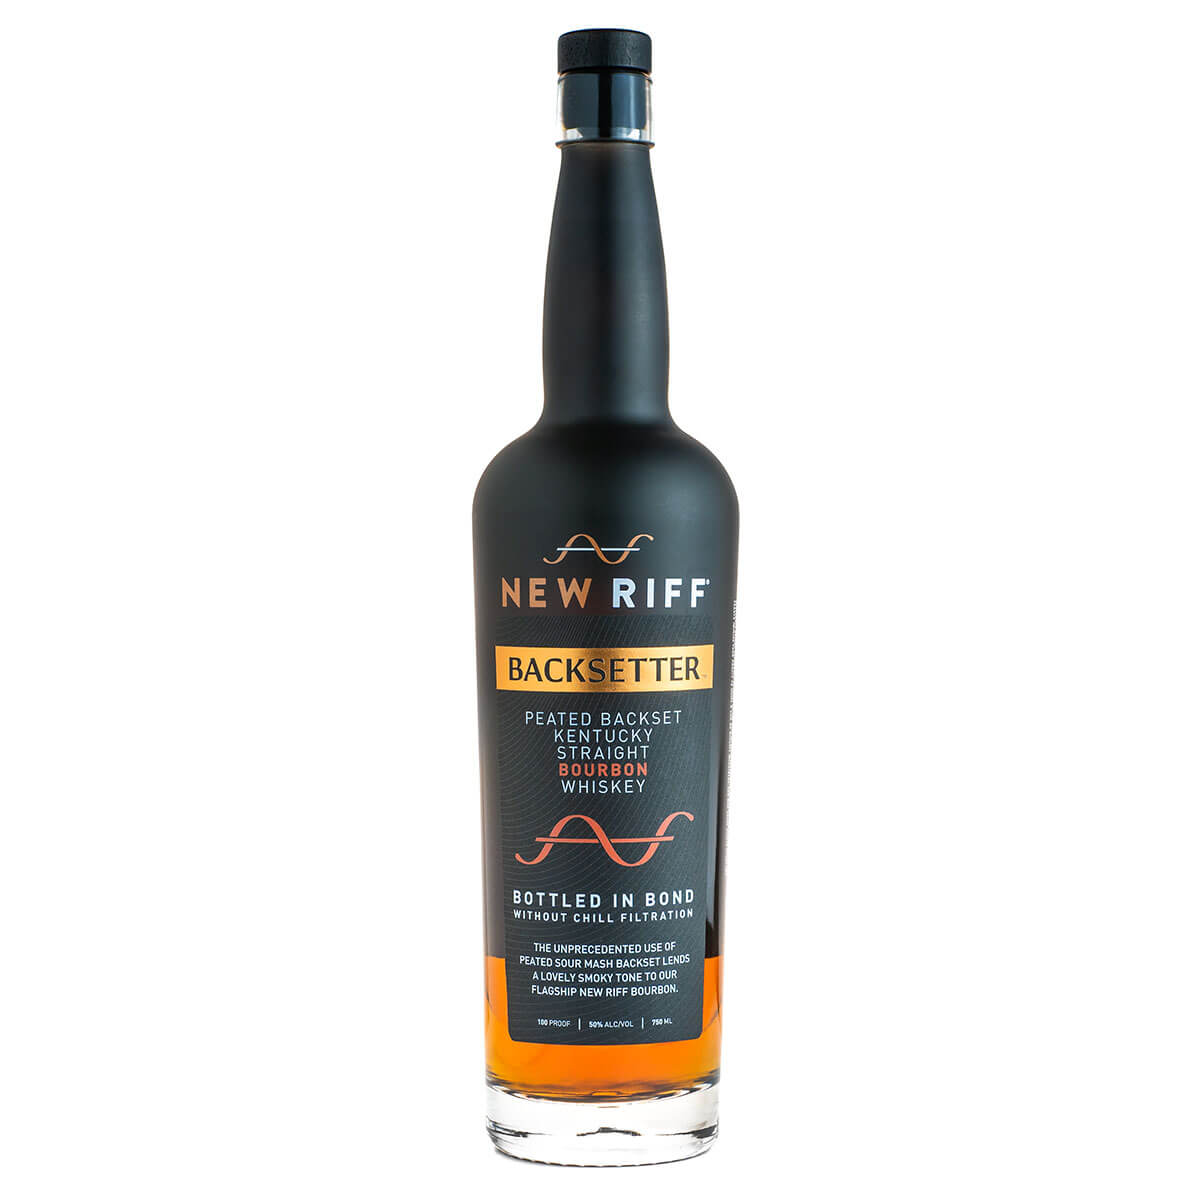 New Riff Backsetter Bourbon bottle